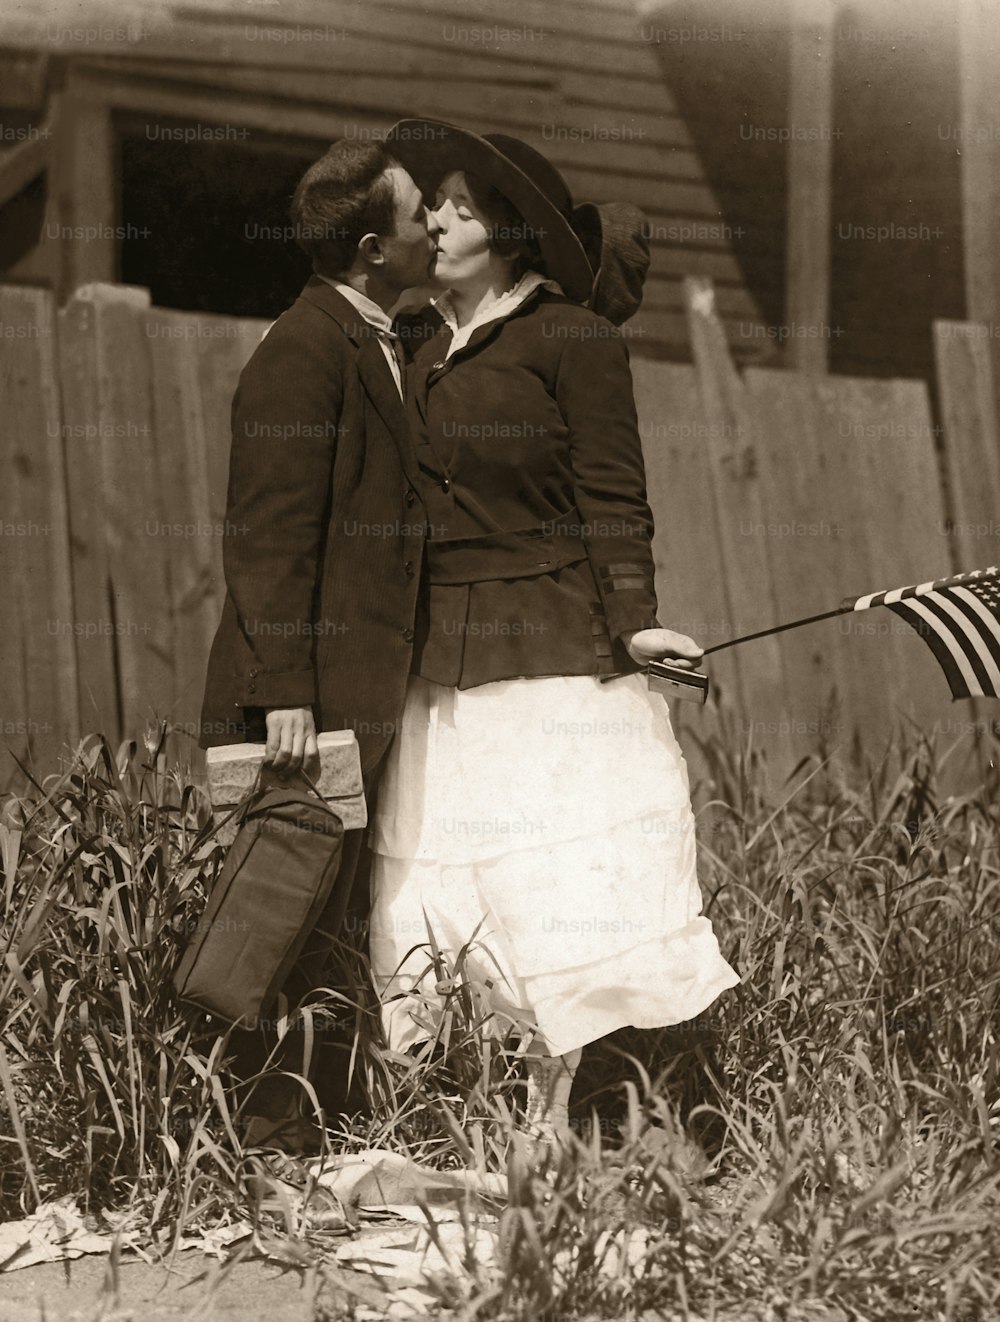 アーカイブ画像。第一次世界大戦時代。